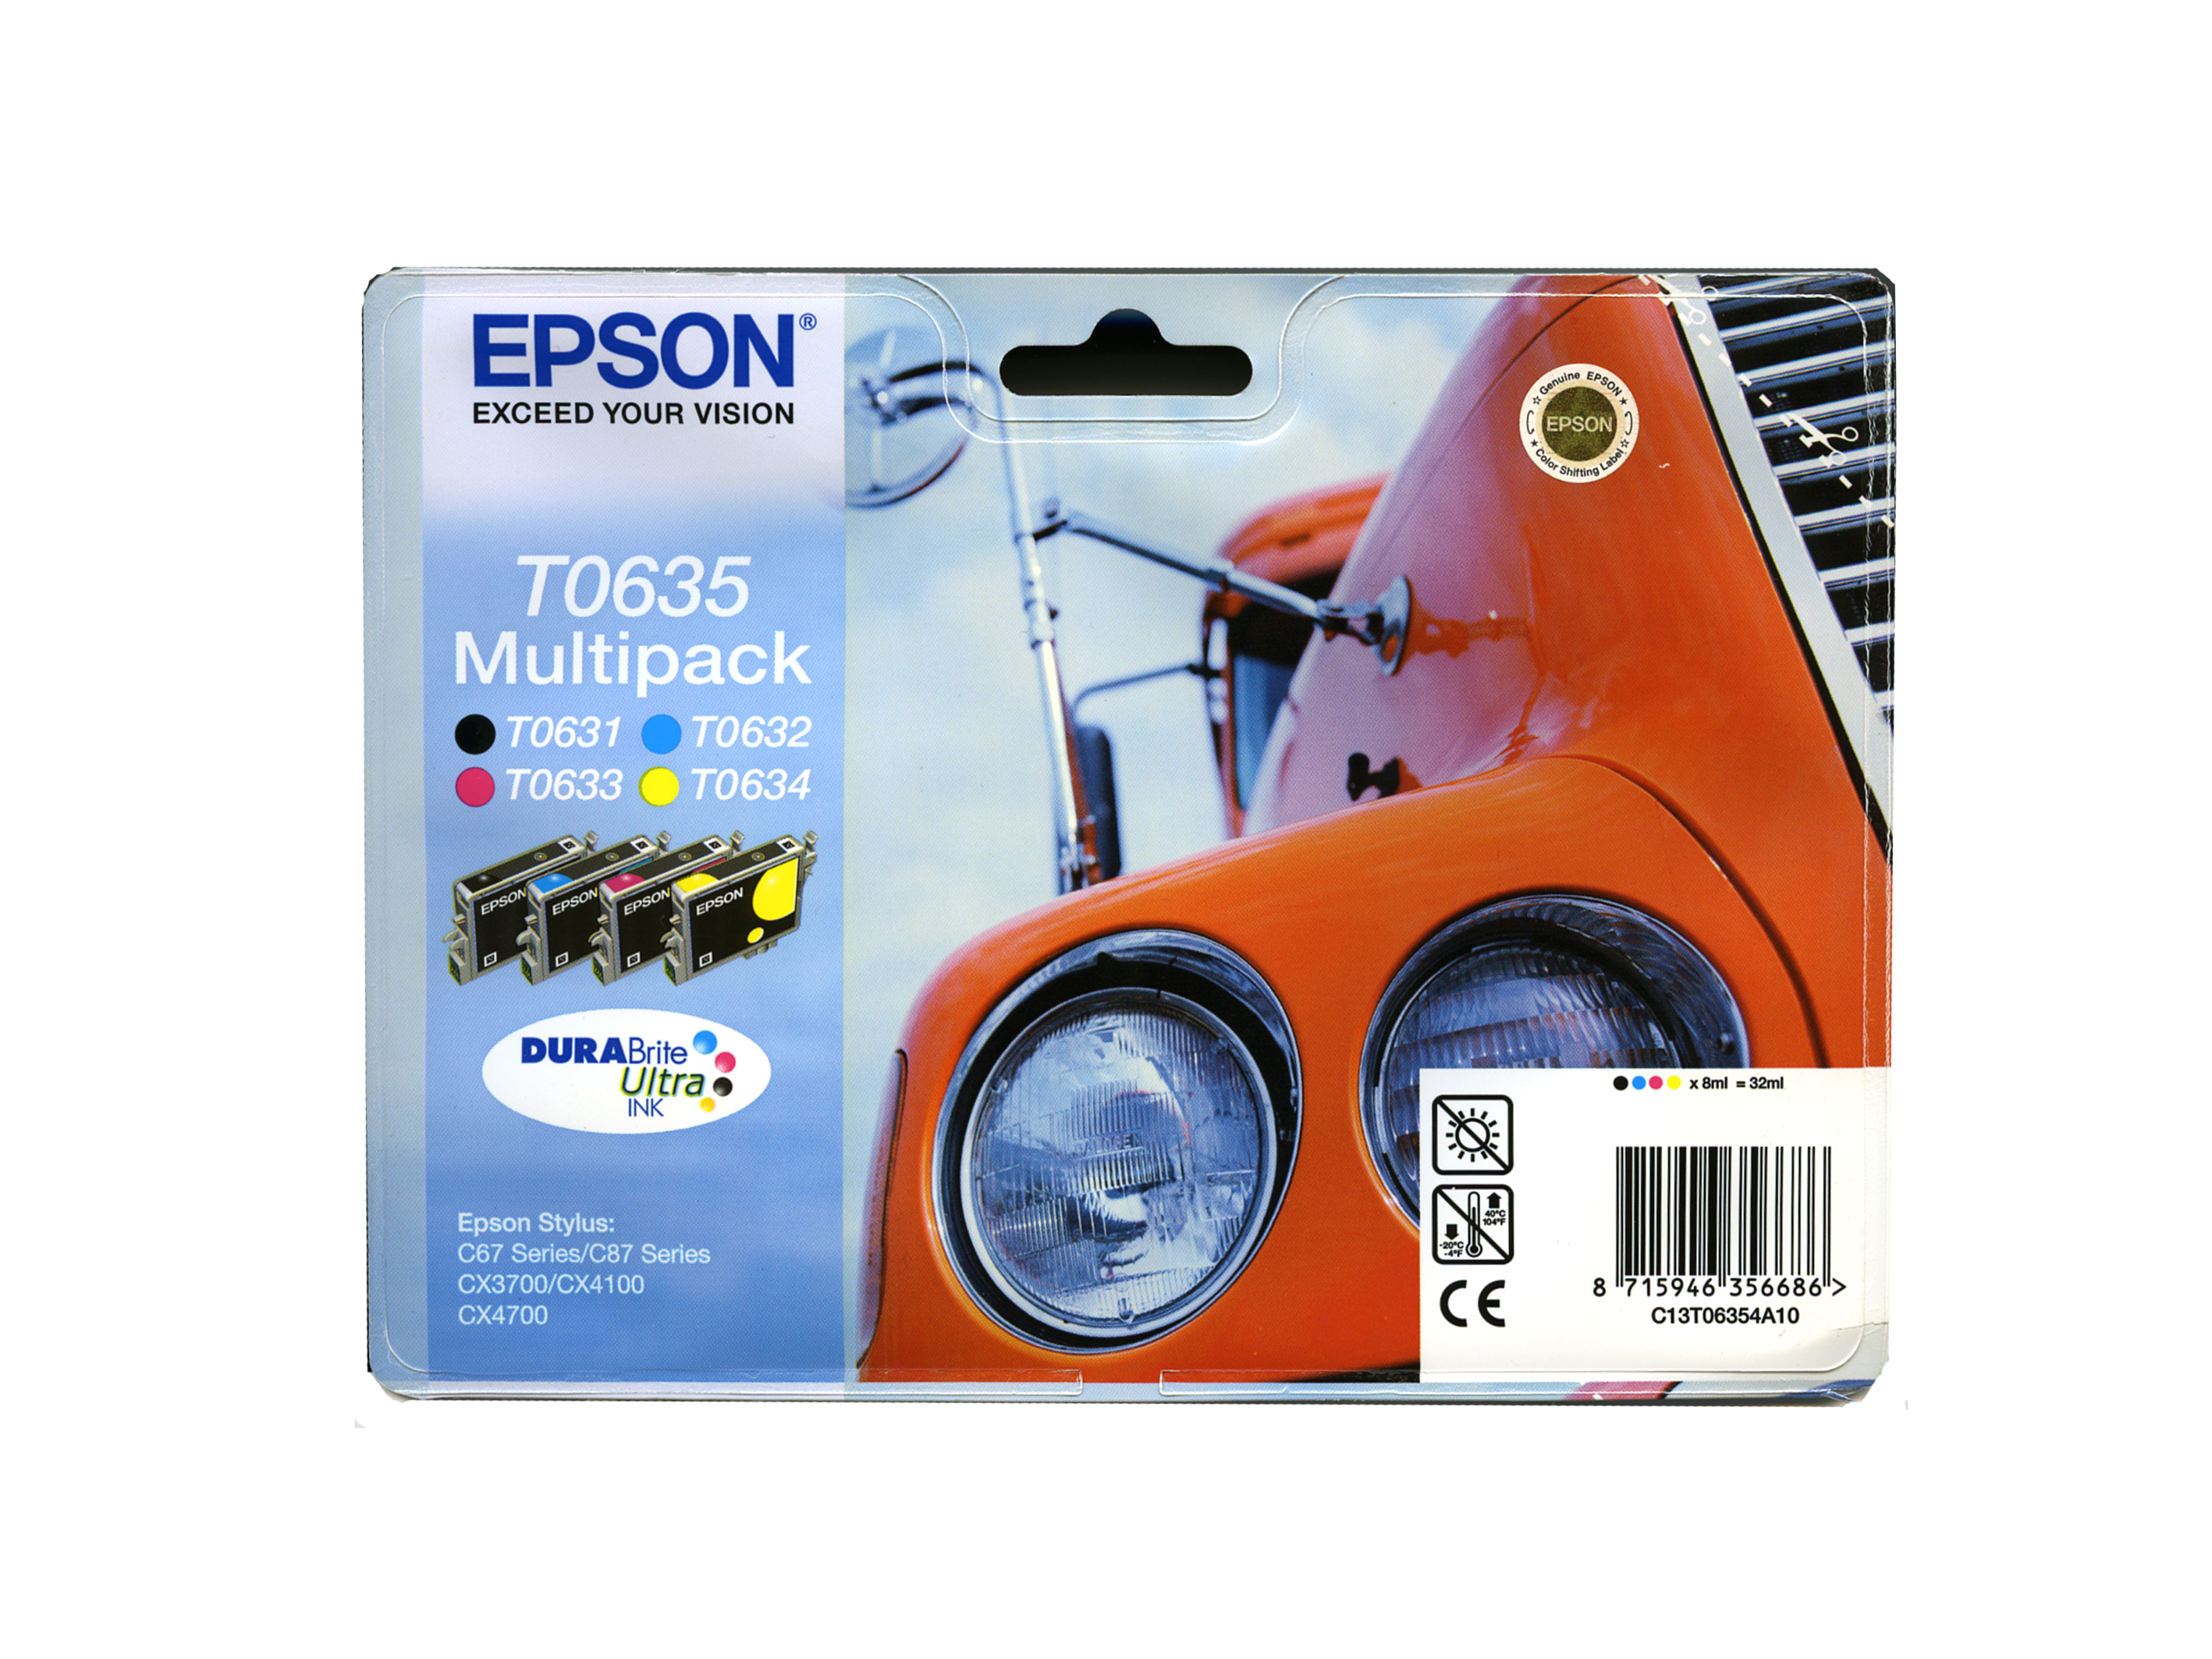 Картридж Epson T06354A10 набор для Stylus Photo 67/68/CX3700/4100/4700